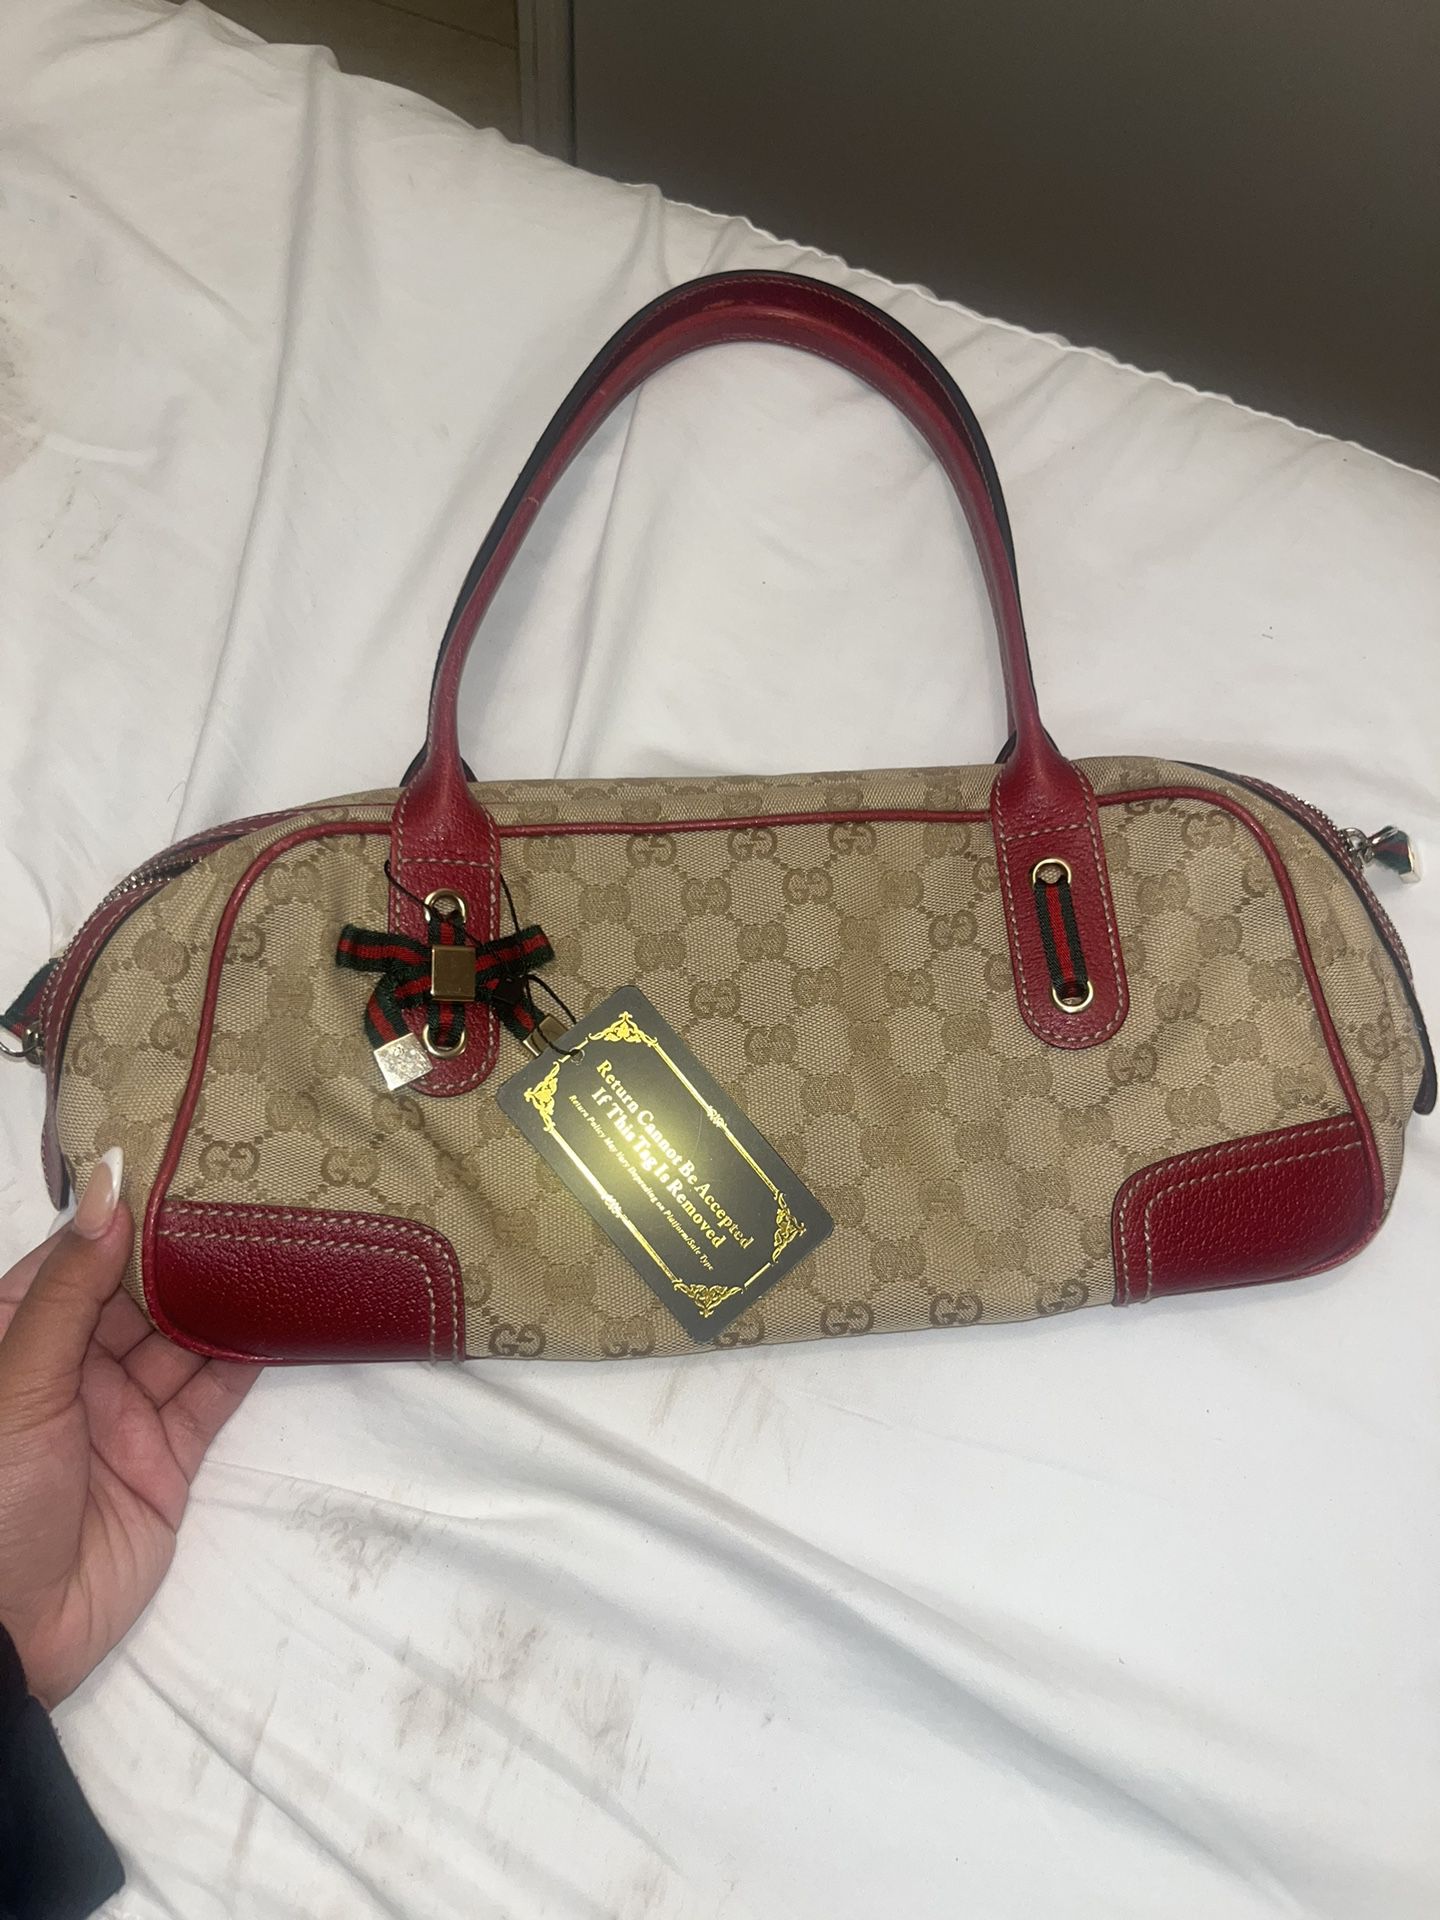 Gucci Princy Boston Bag